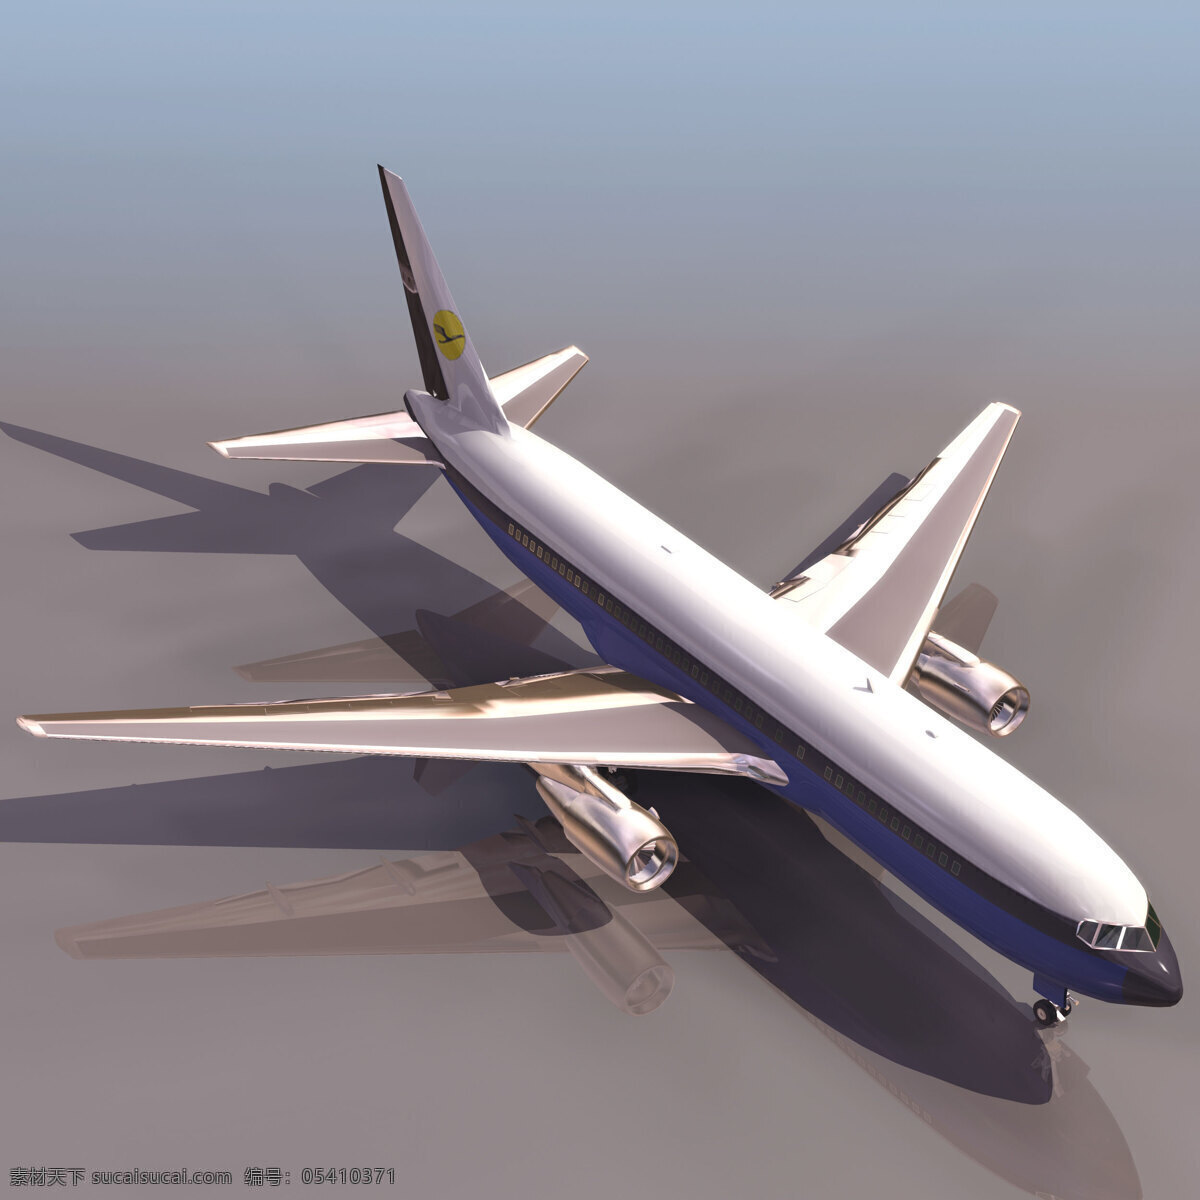 大型 波音 飞机 空中大巴 超音速 航模 3d模型素材 其他3d模型